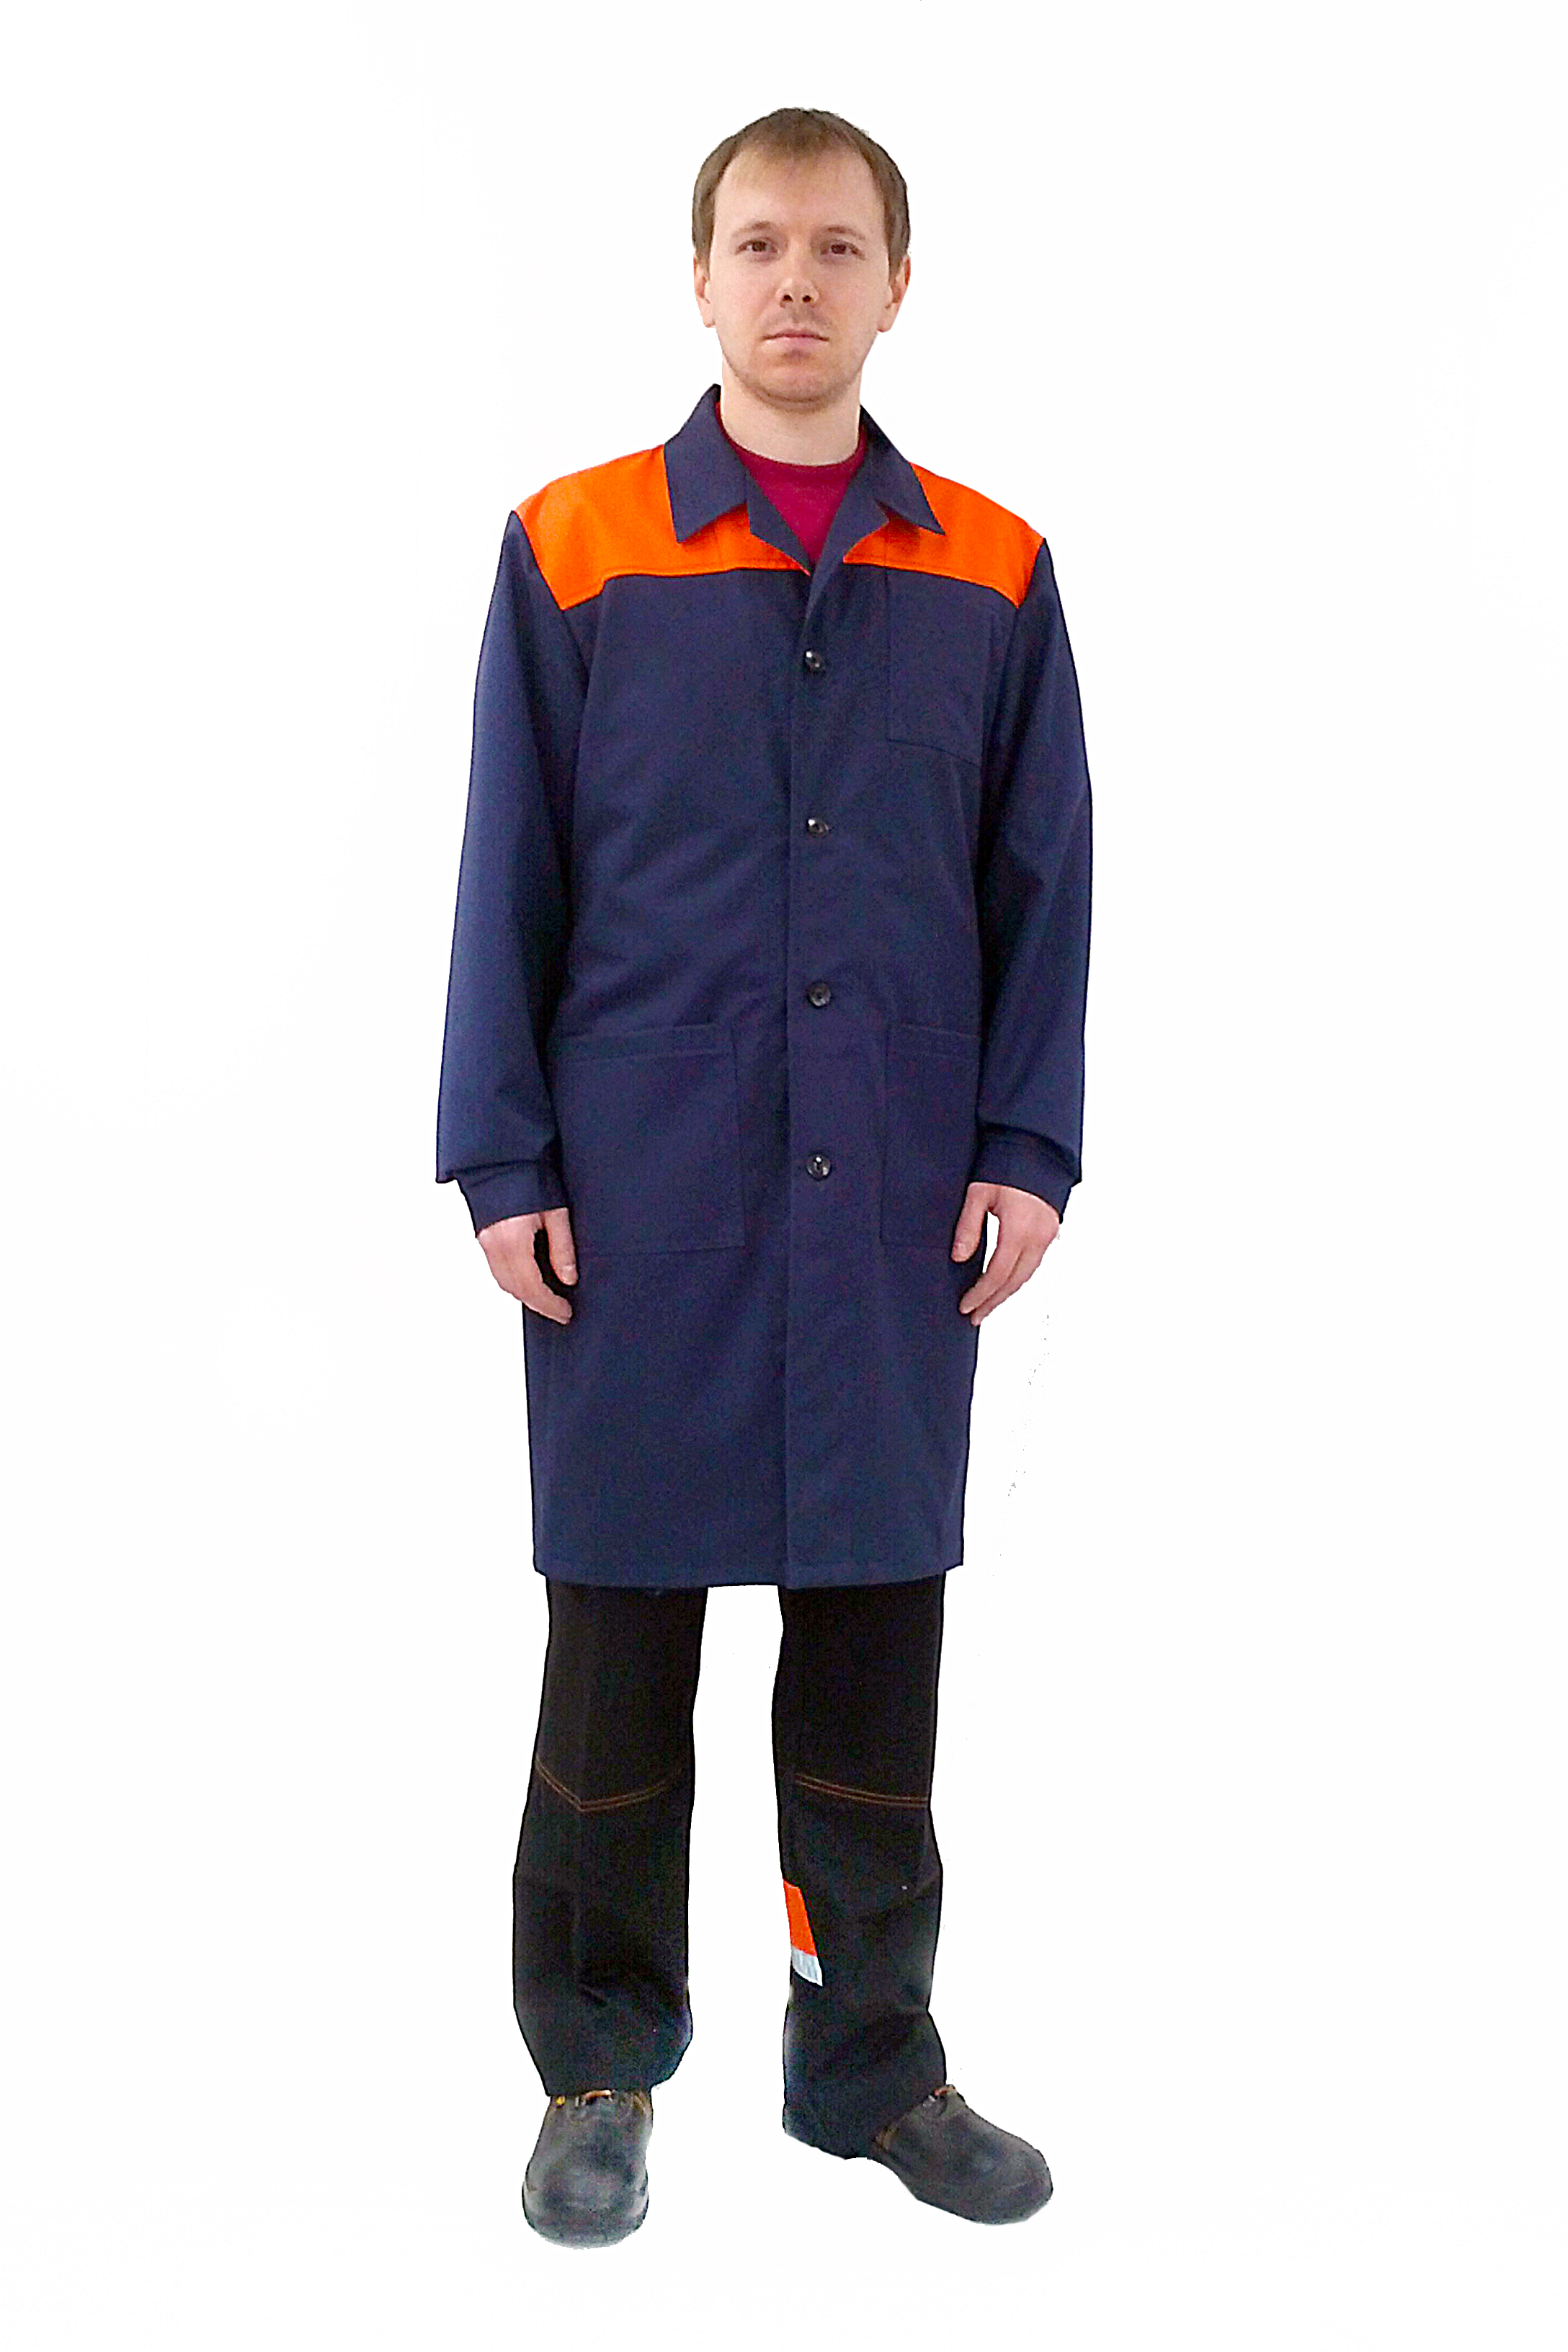 Купить мужской рабочий халат Арт. ХАЛ-01 по низкой стоимости